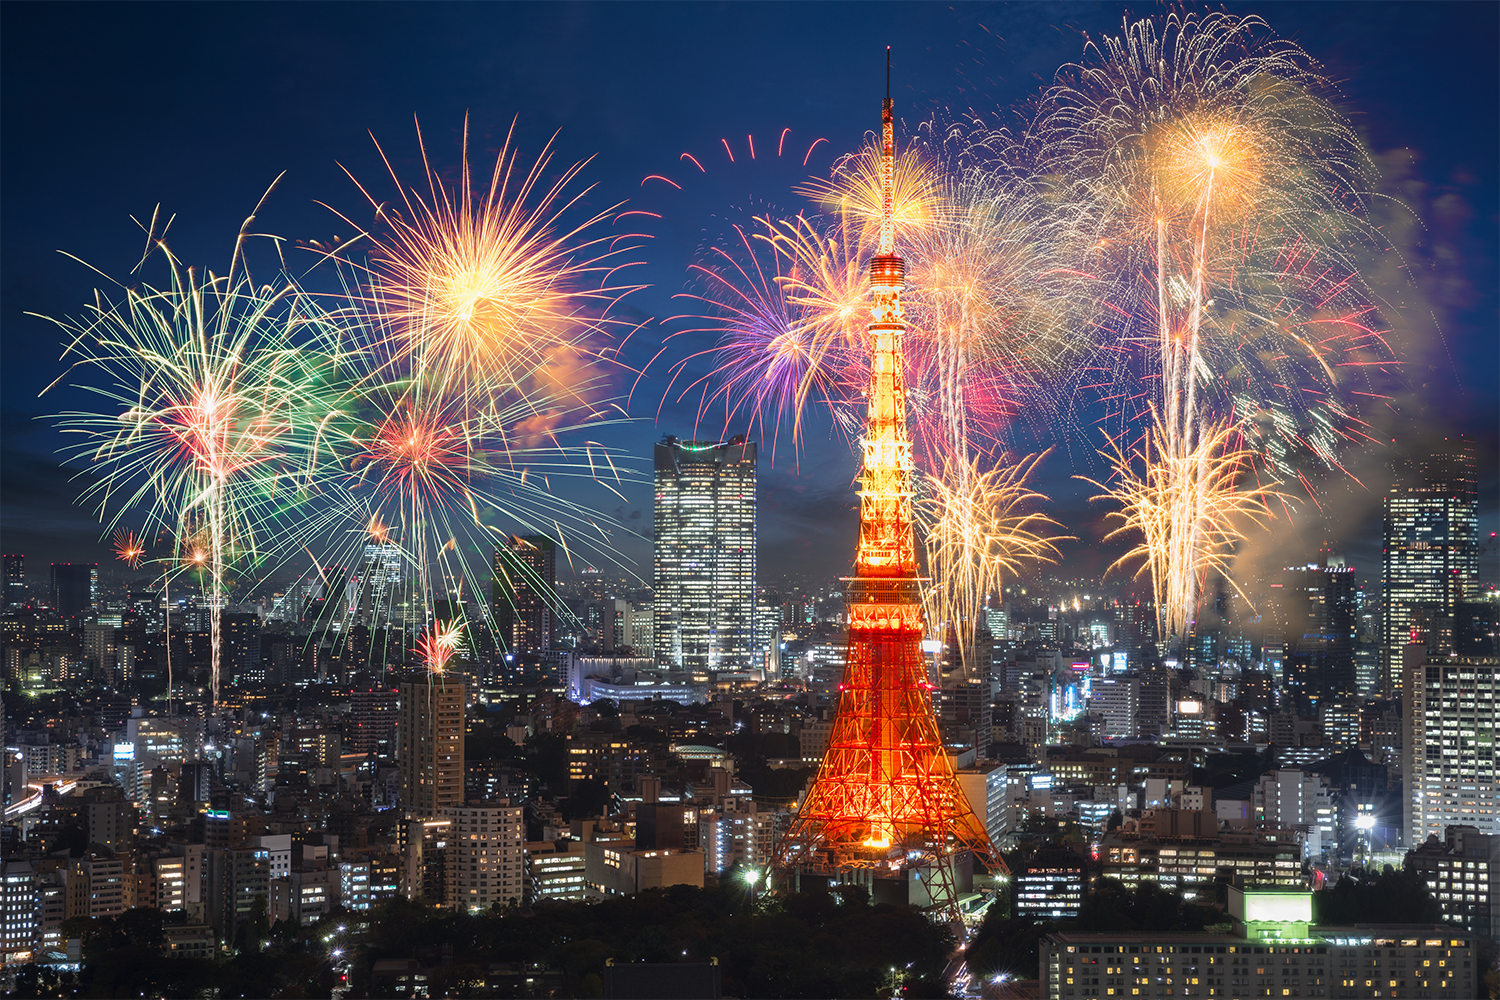 Fireworks light up over the Tokyo skyline.